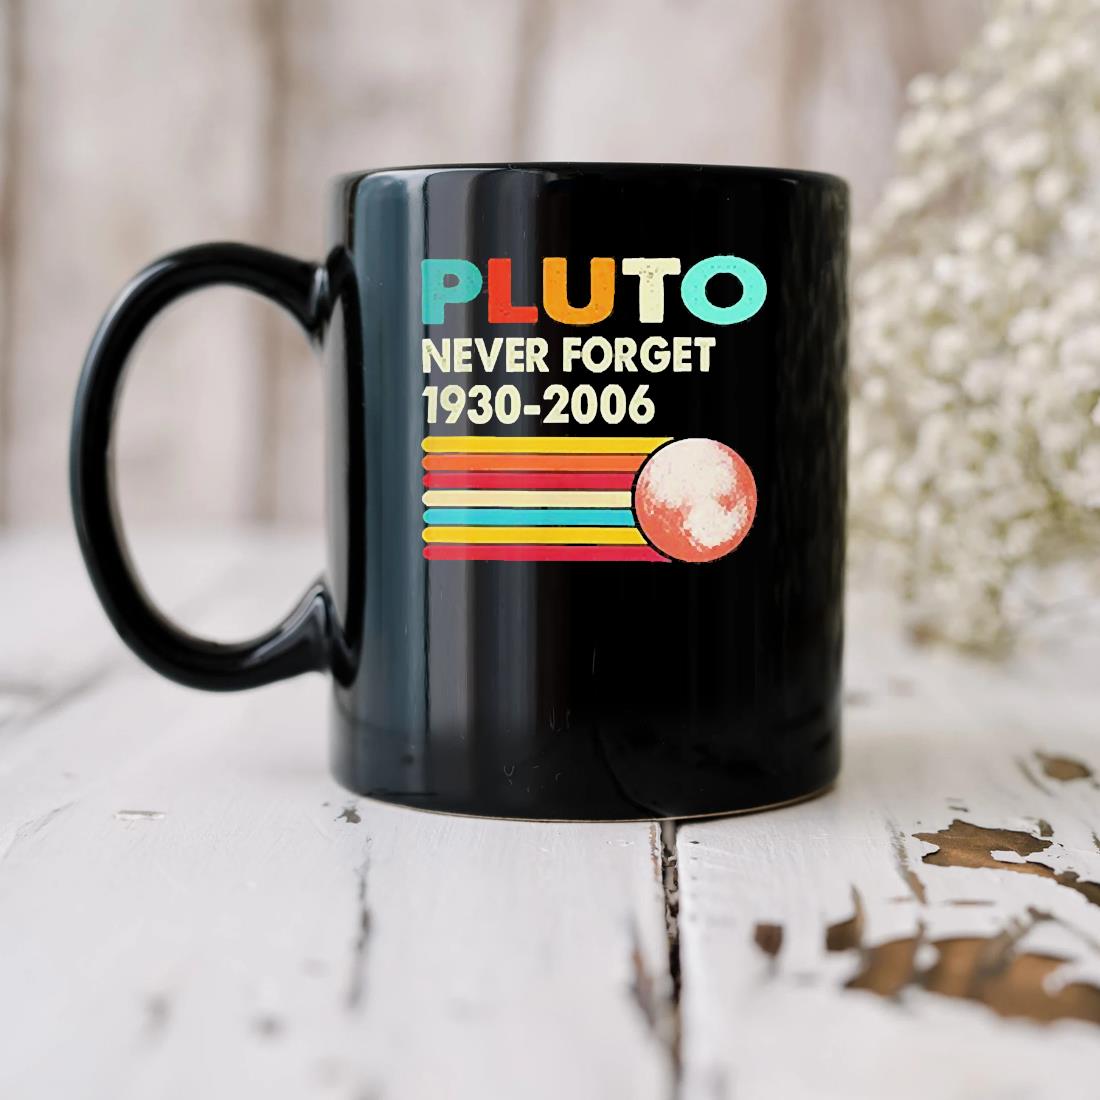 Pluto Never Forget 1930-2006 Mug